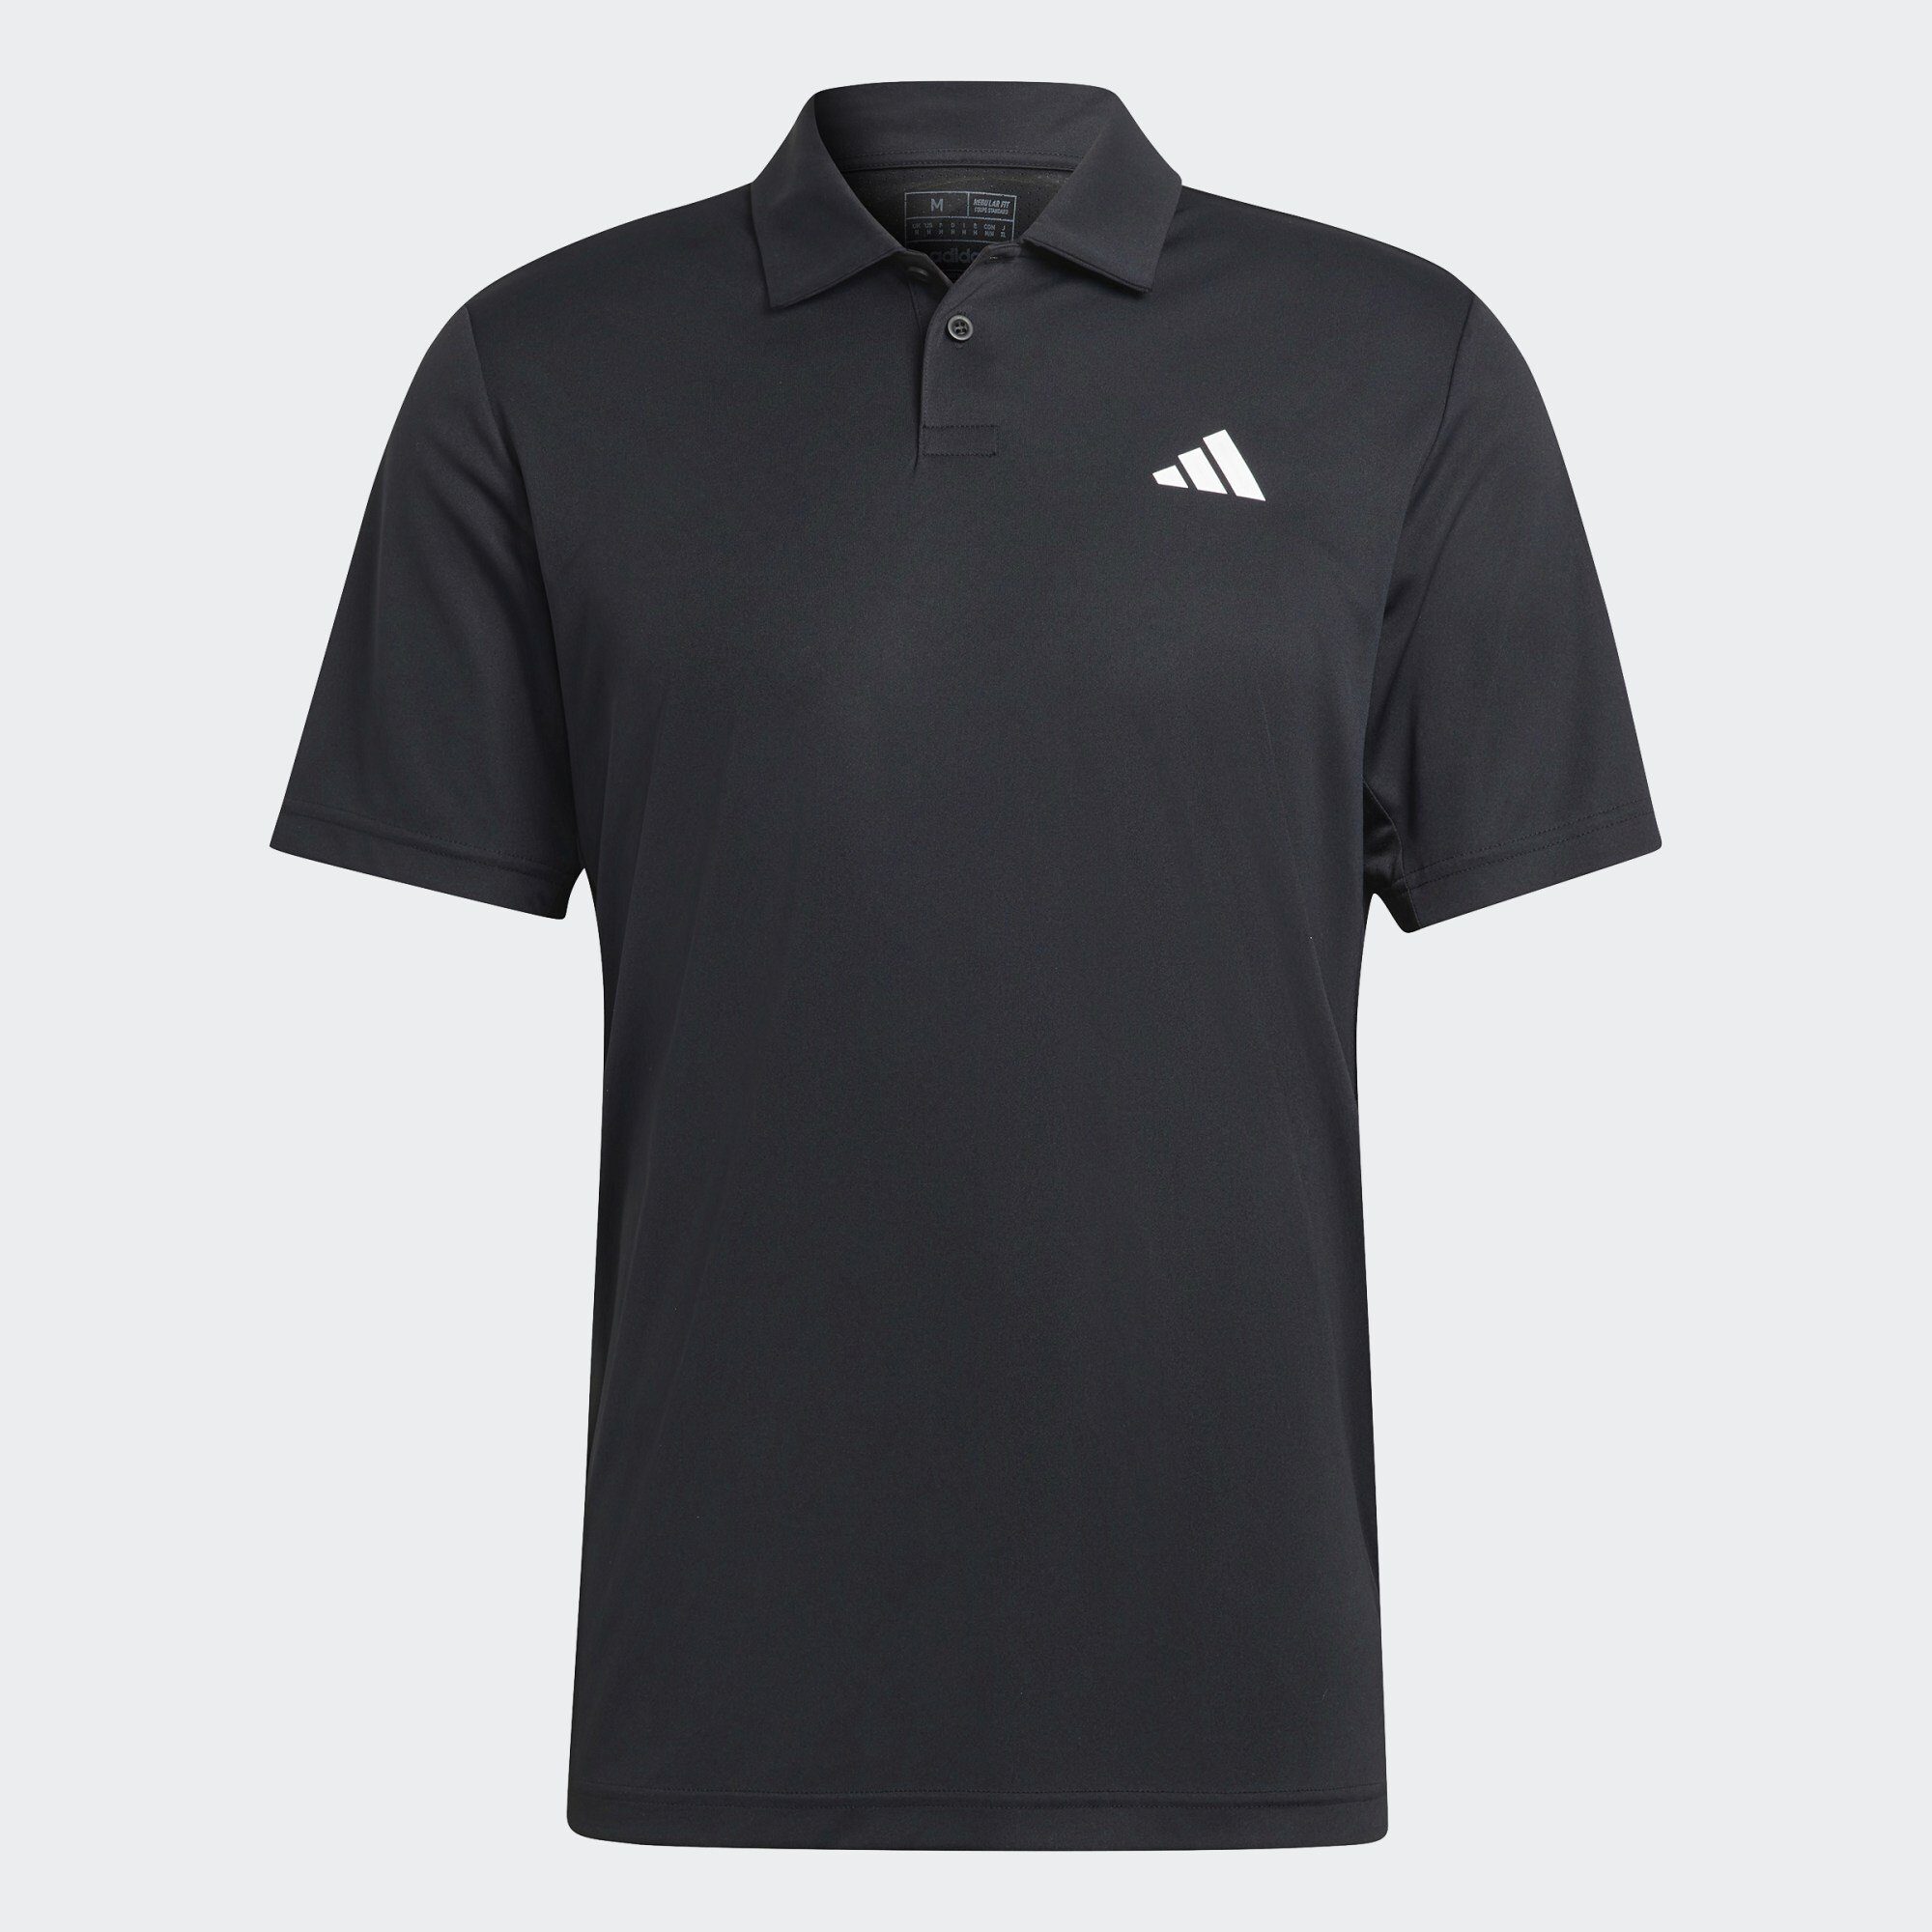 TENNIS Funktionsshirt CLUB Black POLOSHIRT Performance adidas